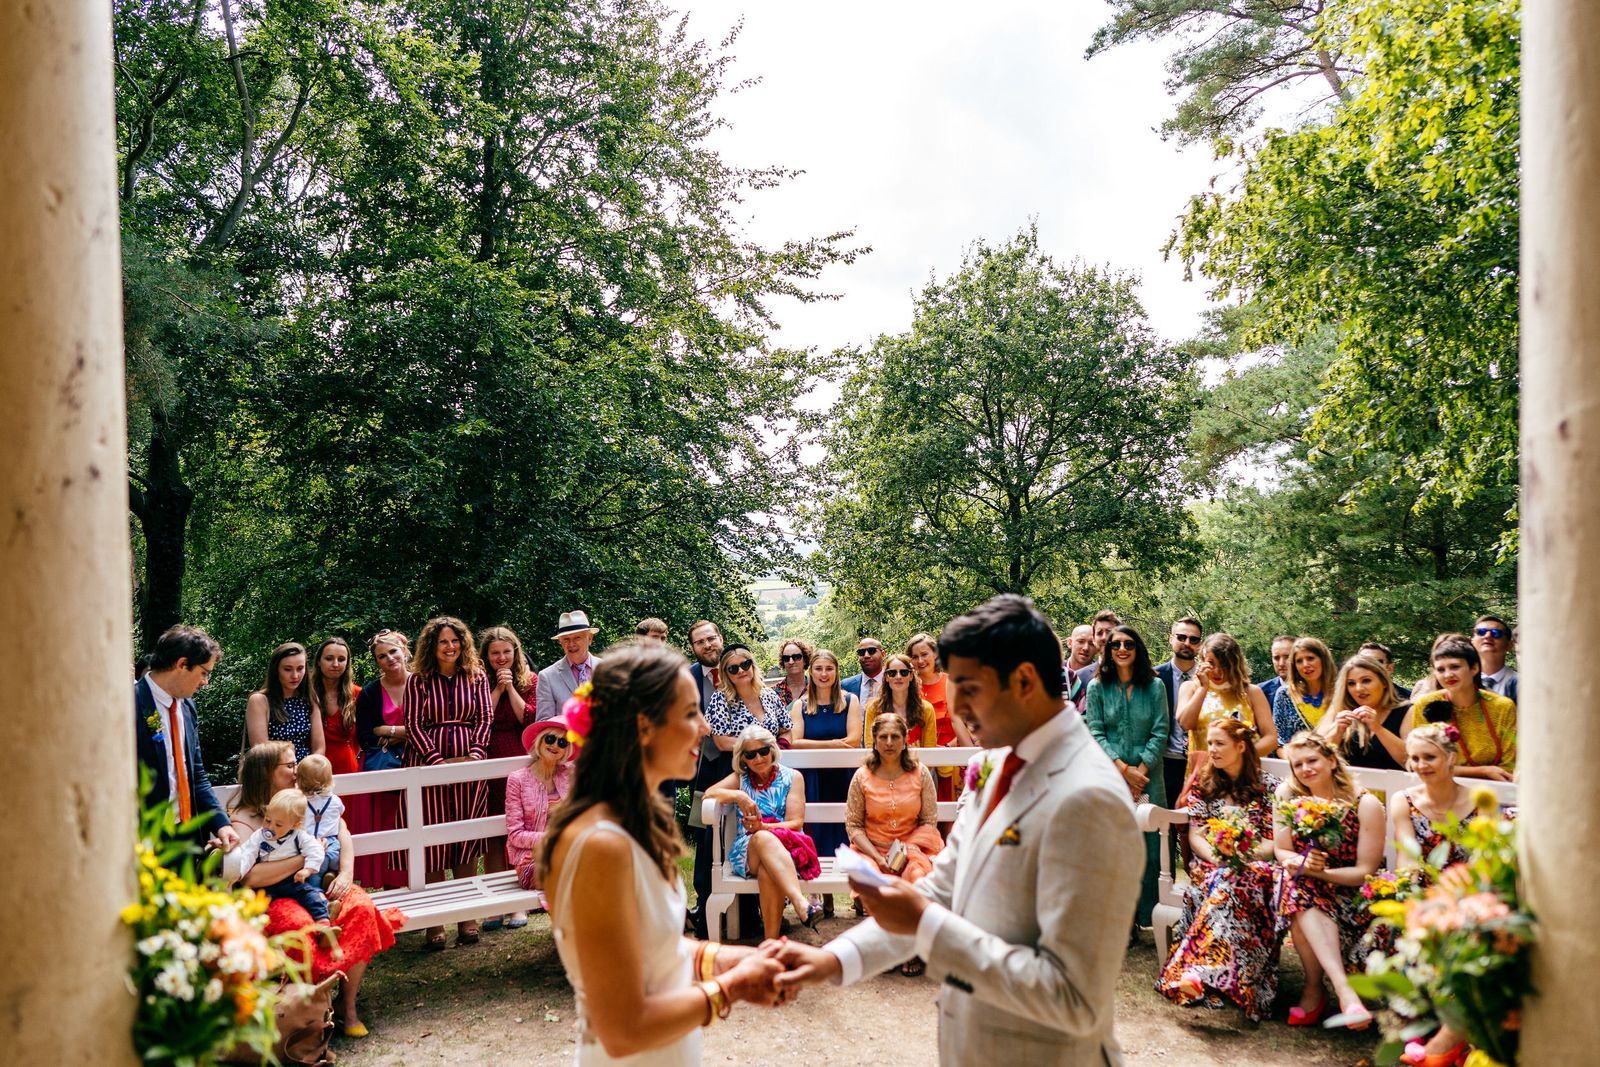 outdoor wedding ceremony at Hestercombe Gardens in Somerset